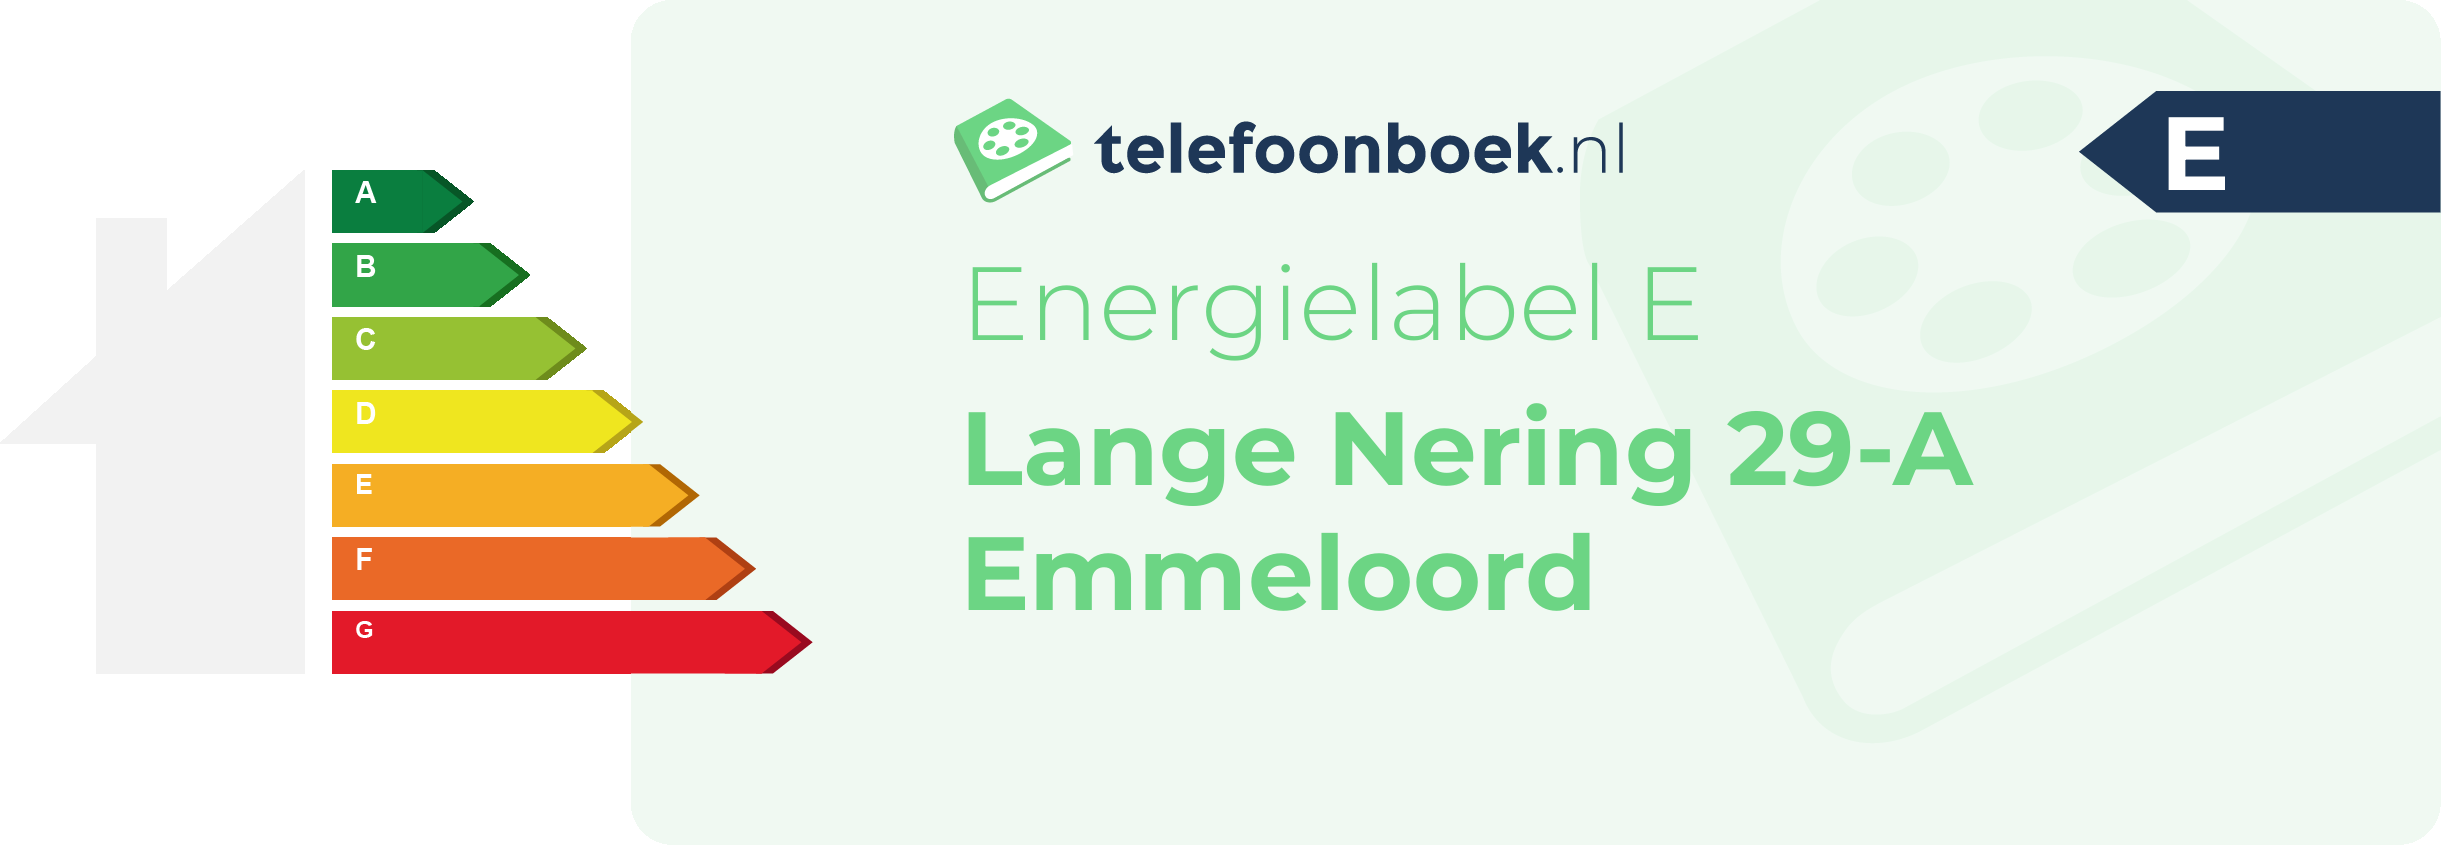 Energielabel Lange Nering 29-A Emmeloord